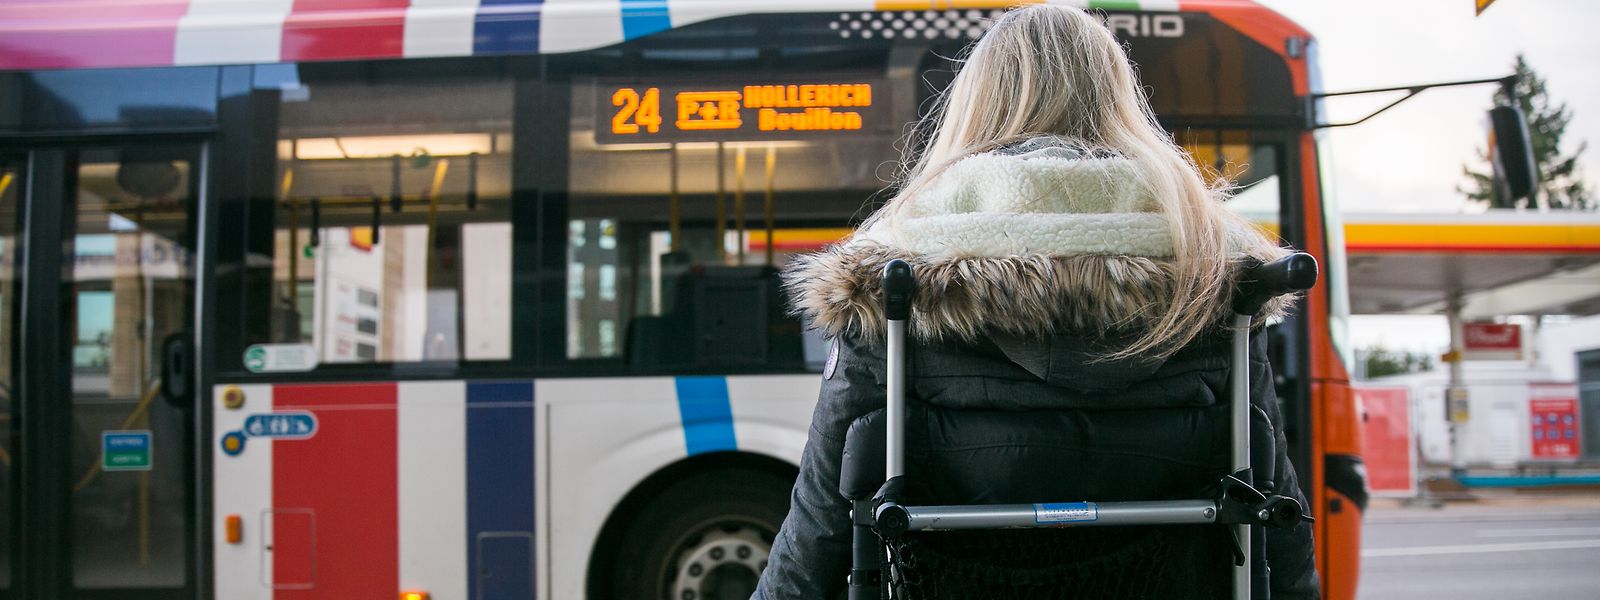 Für Menschen, die in ihrer Mobilität eingeschränkt sind, wird der öffentliche Transport oft zur Herausforderung. Der Adapto-Bus schafft hier Abhilfe.